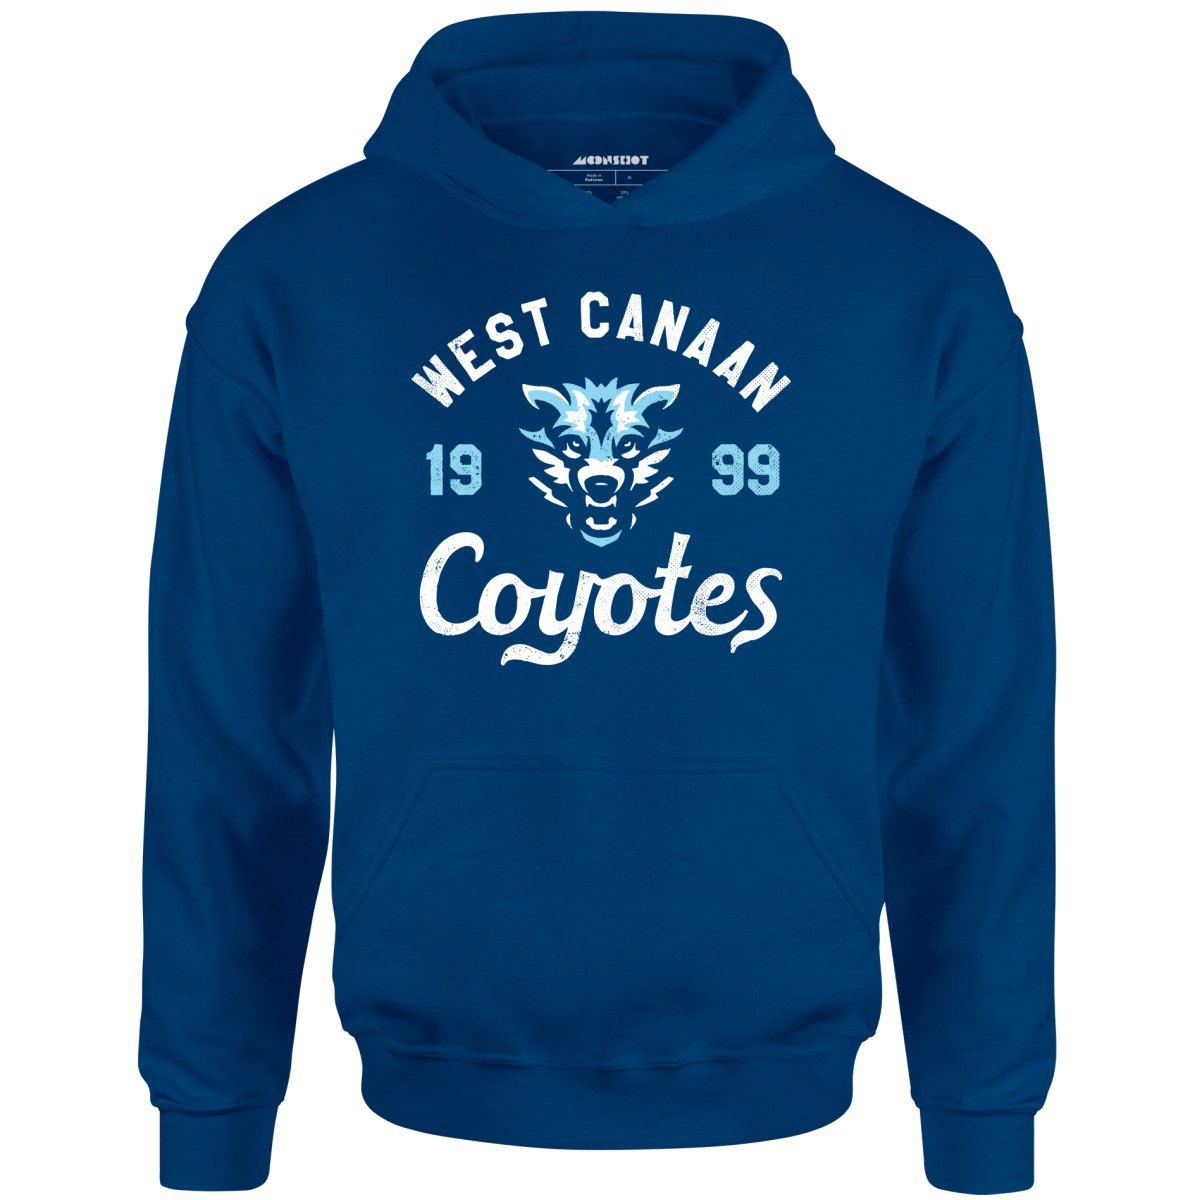 West Canaan Coyotes - Unisex Hoodie